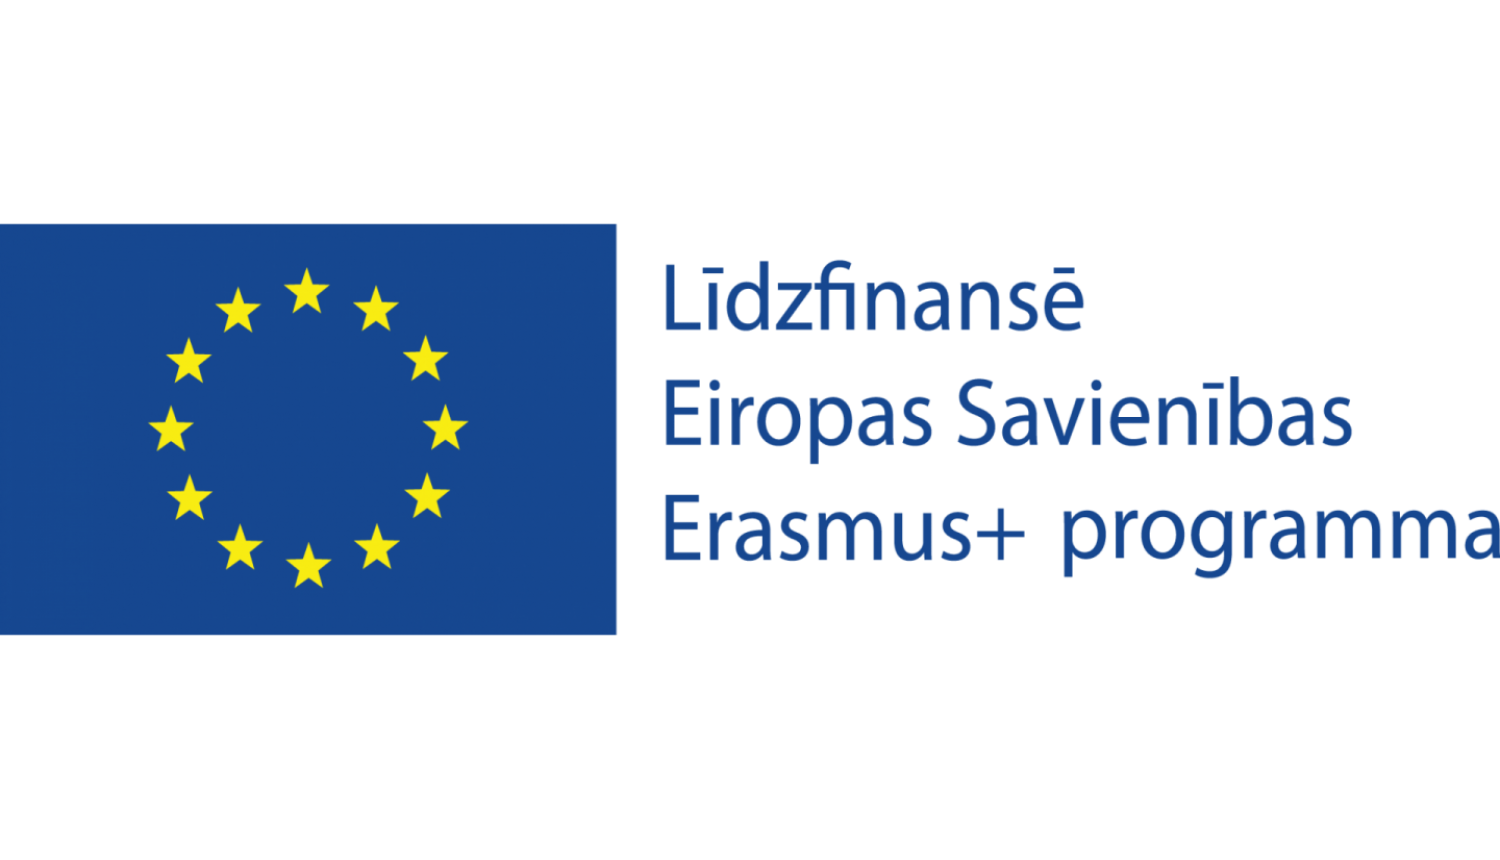 Līdzfinansē Eiropas Savienības Erasmus+ programma